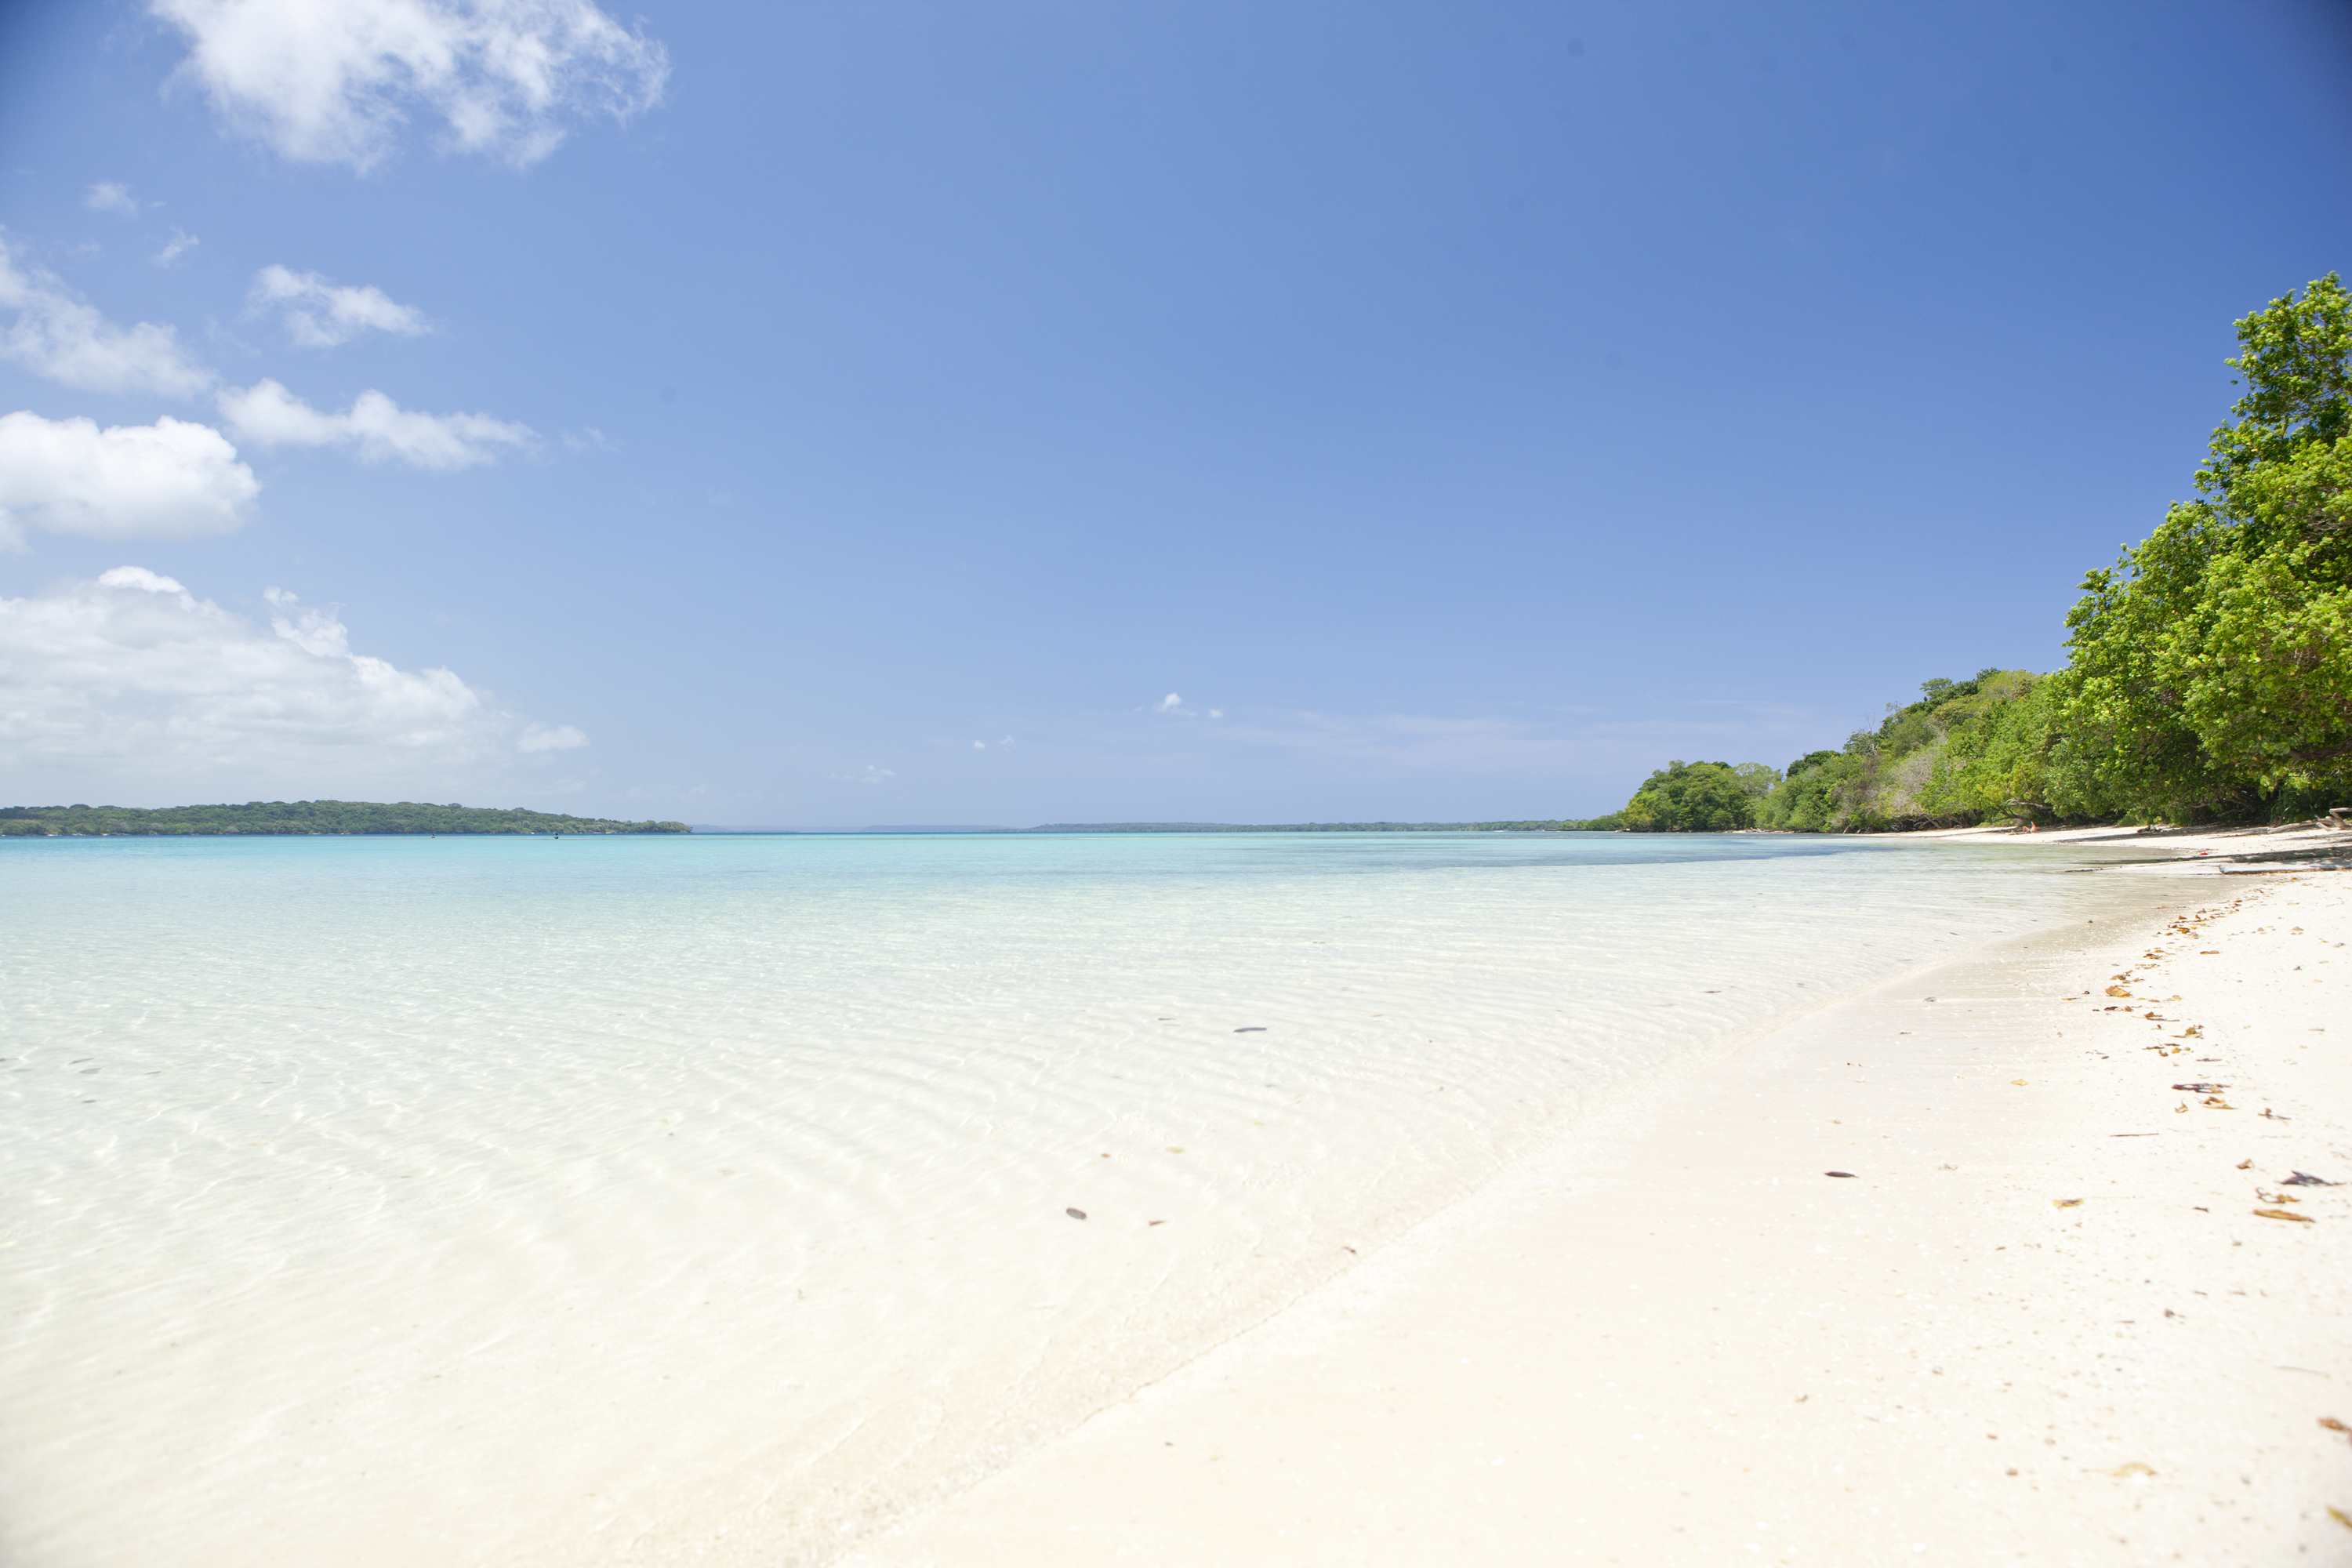 Vanuatu second biggest Pacific tourist destination